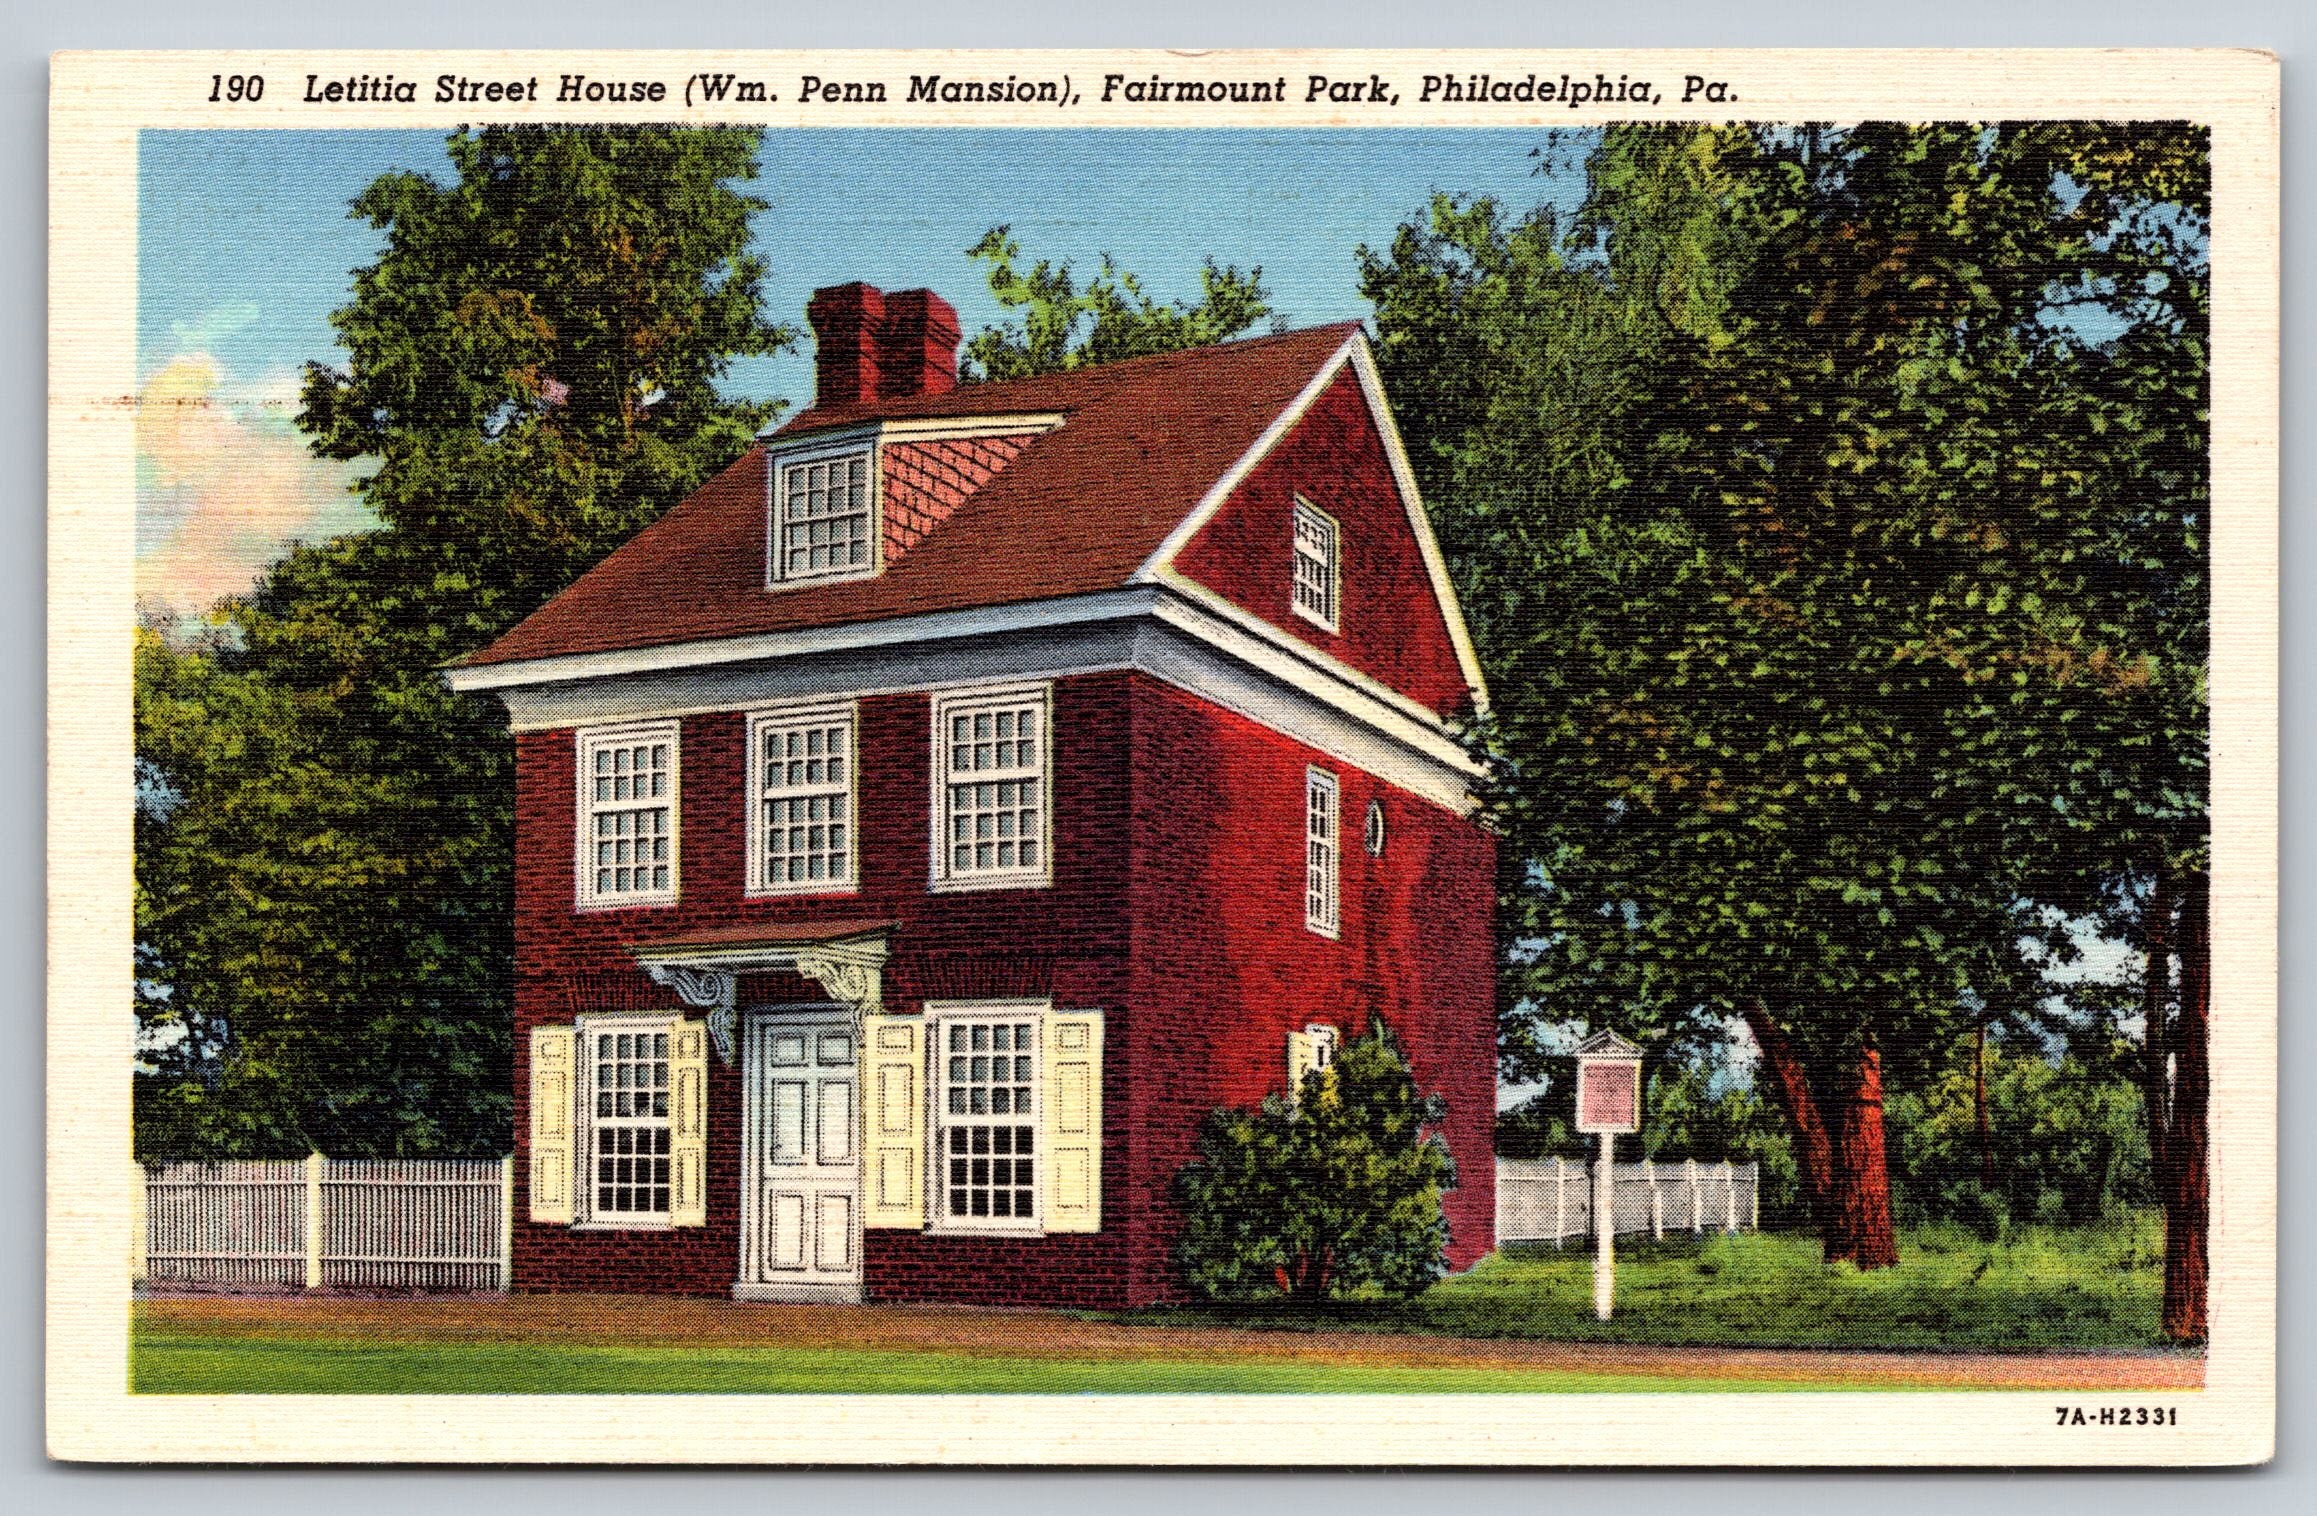 Letitia Street House, Fairmount Park, Philadelphia, Pennsylvania, USA, VTG PC